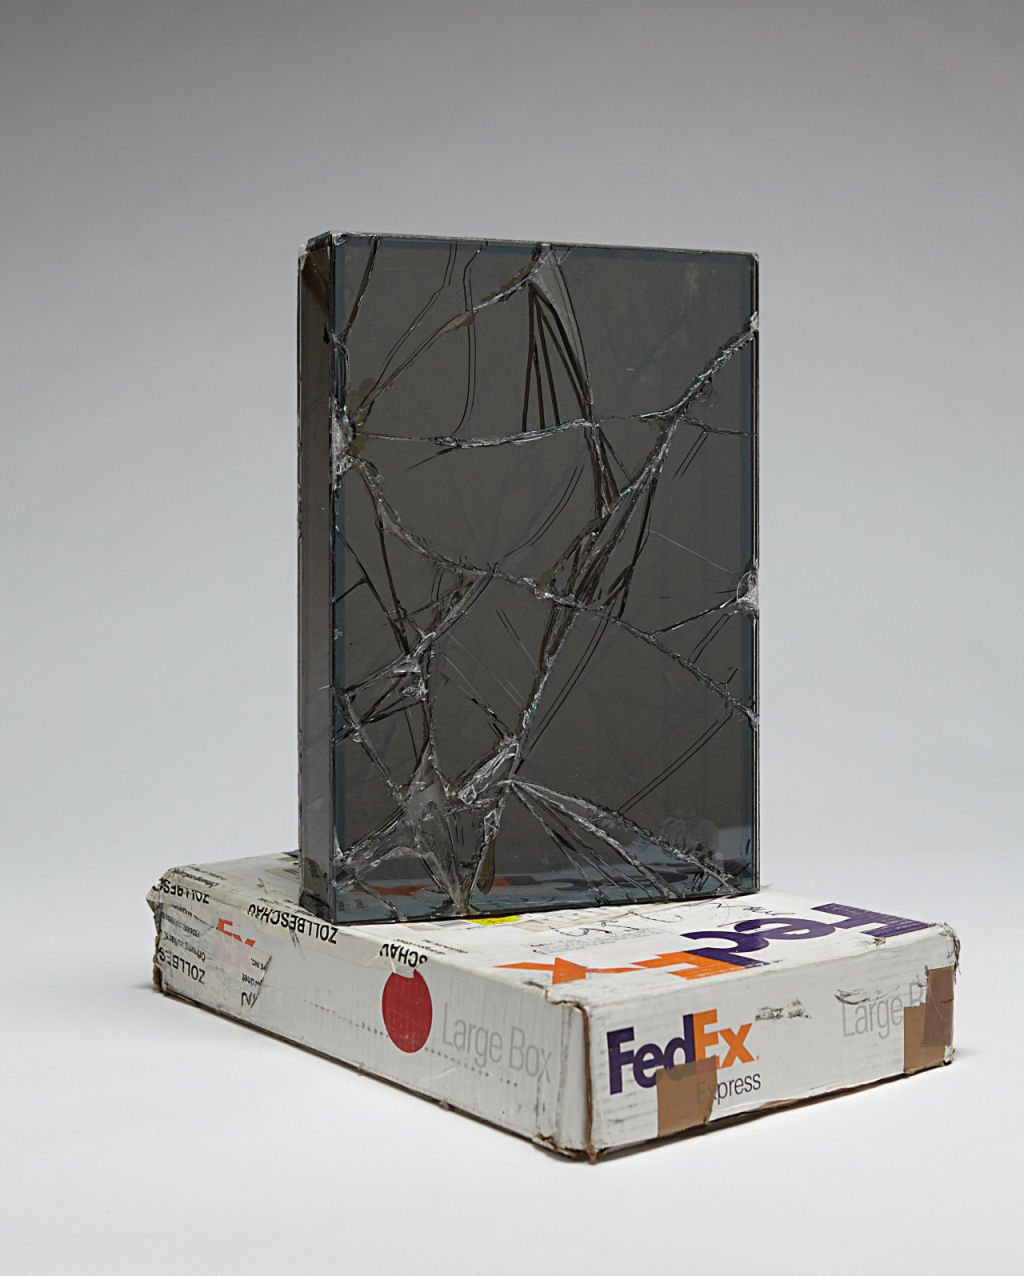 Artista envia caixas de vidro por FedEx para criar suas esculturas 02